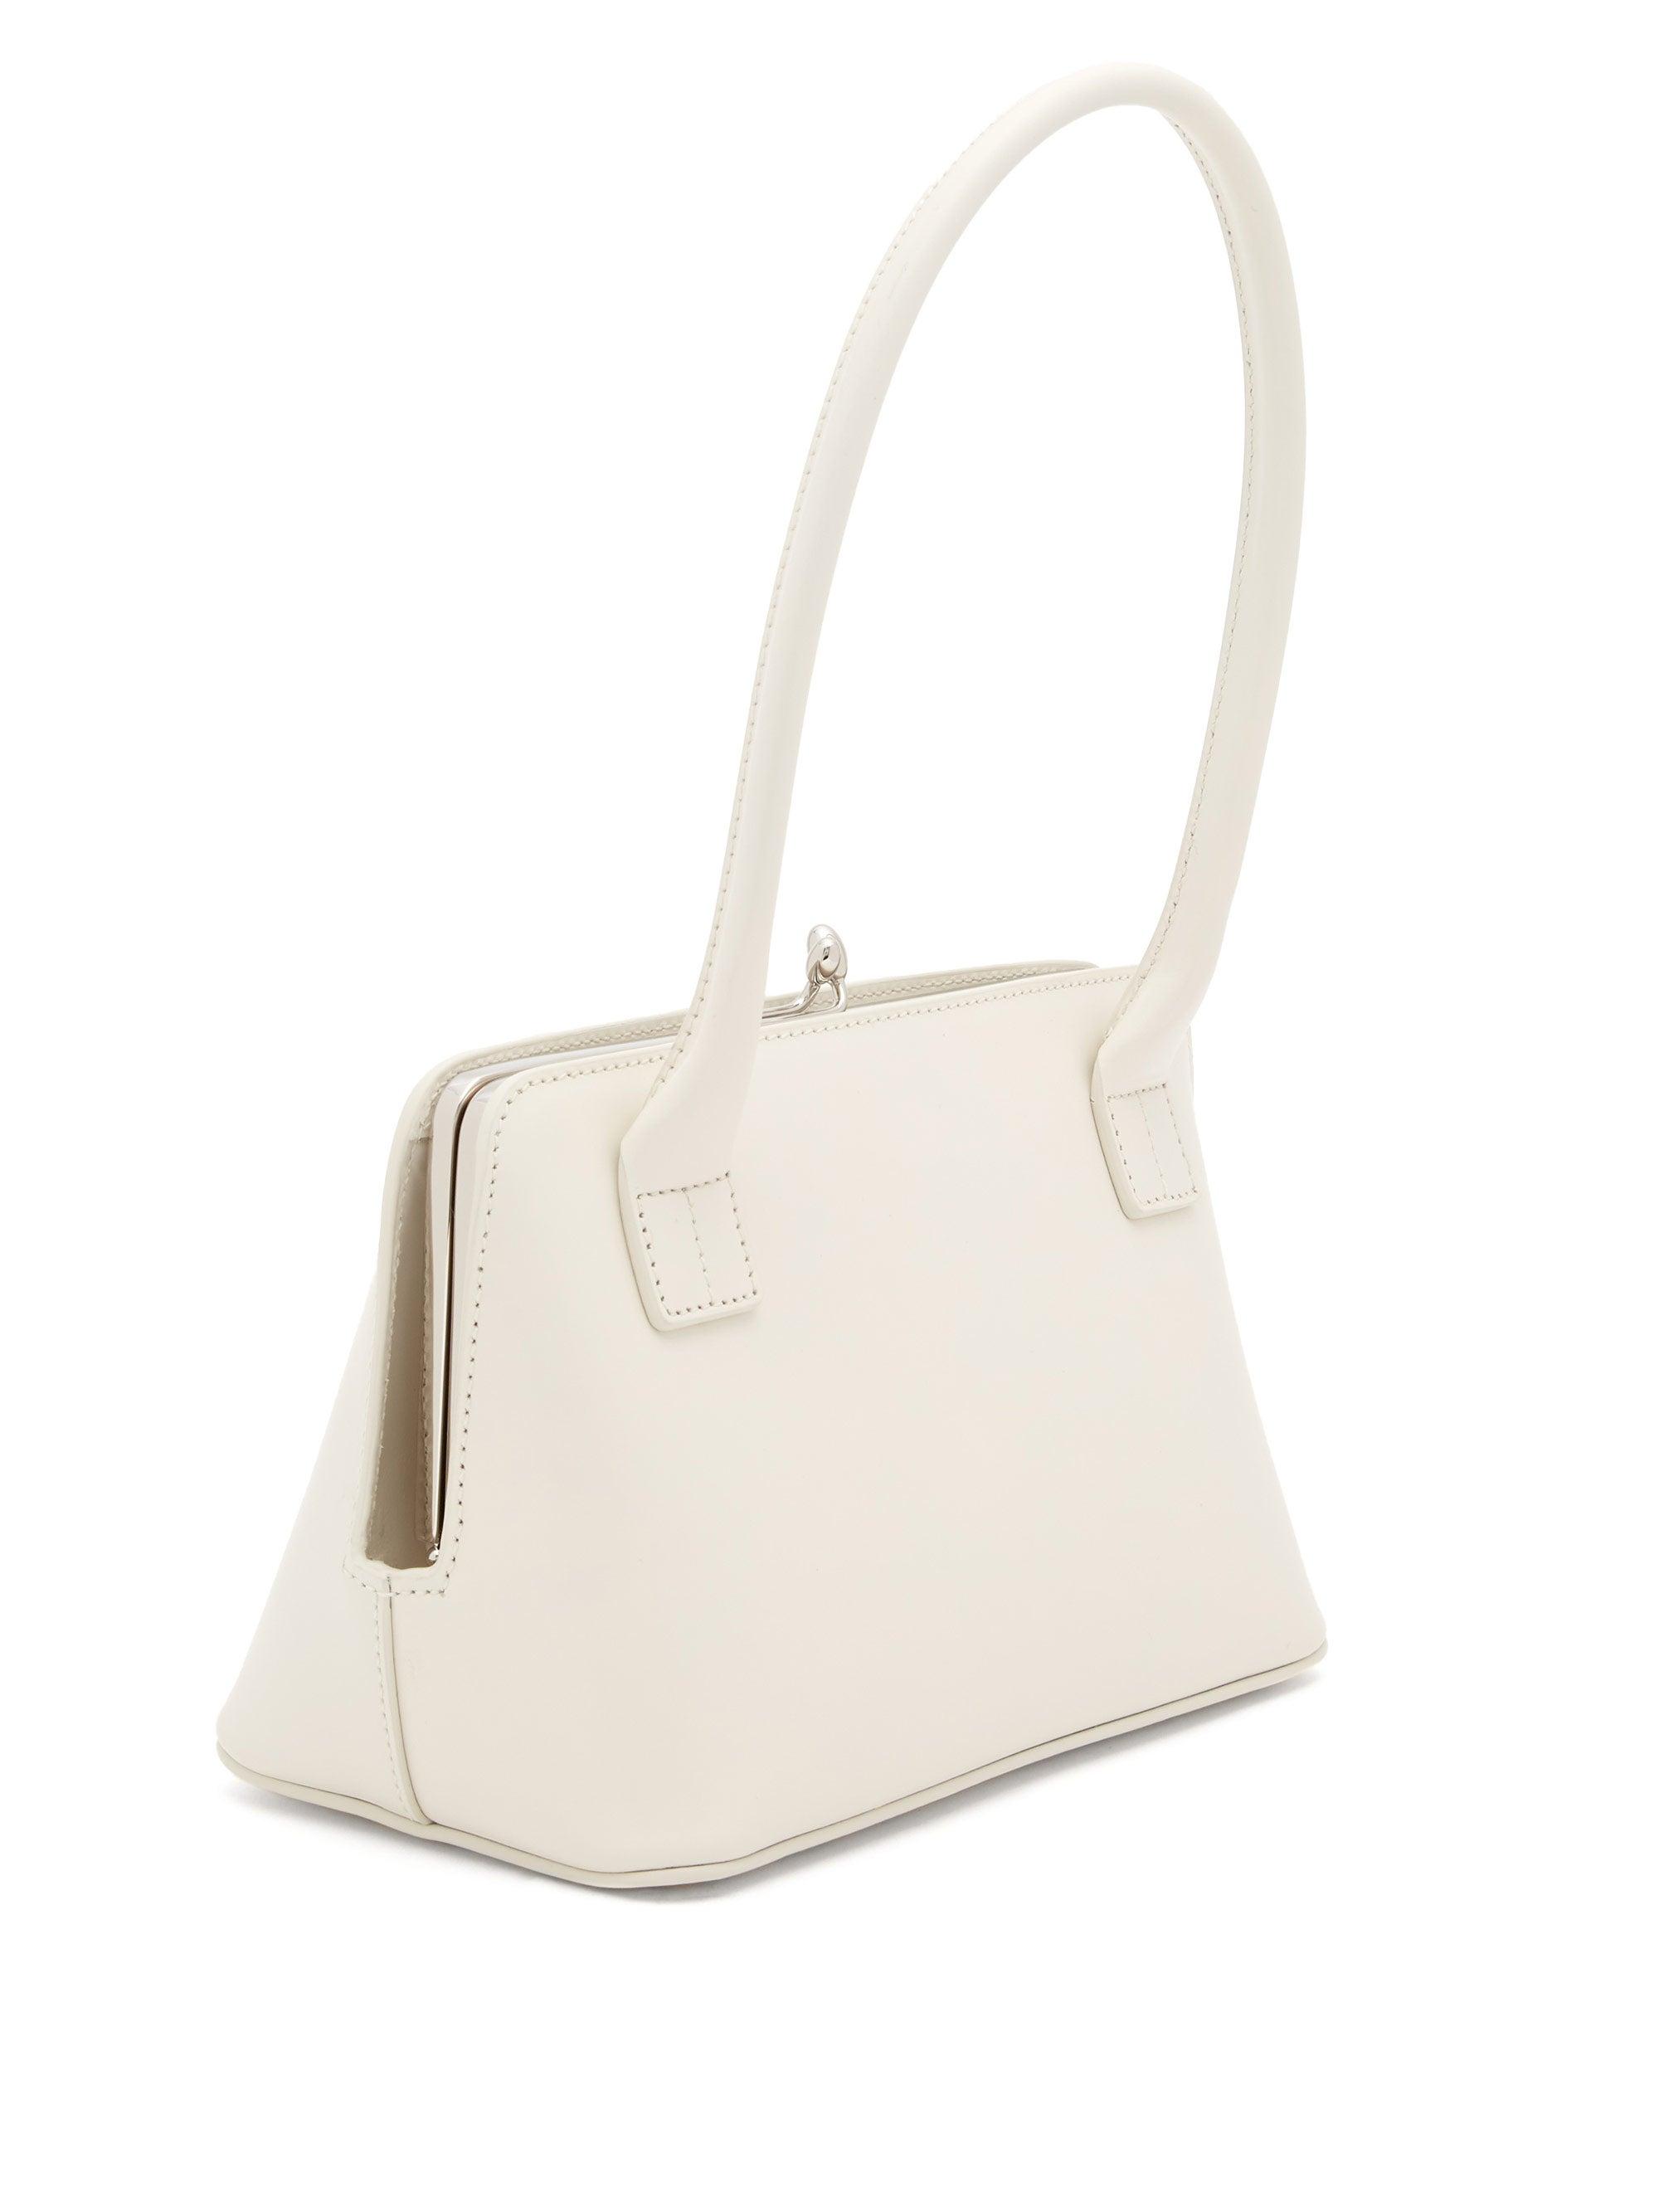 Jil Sander Goji Medium Structured Leather Bag in White - Lyst